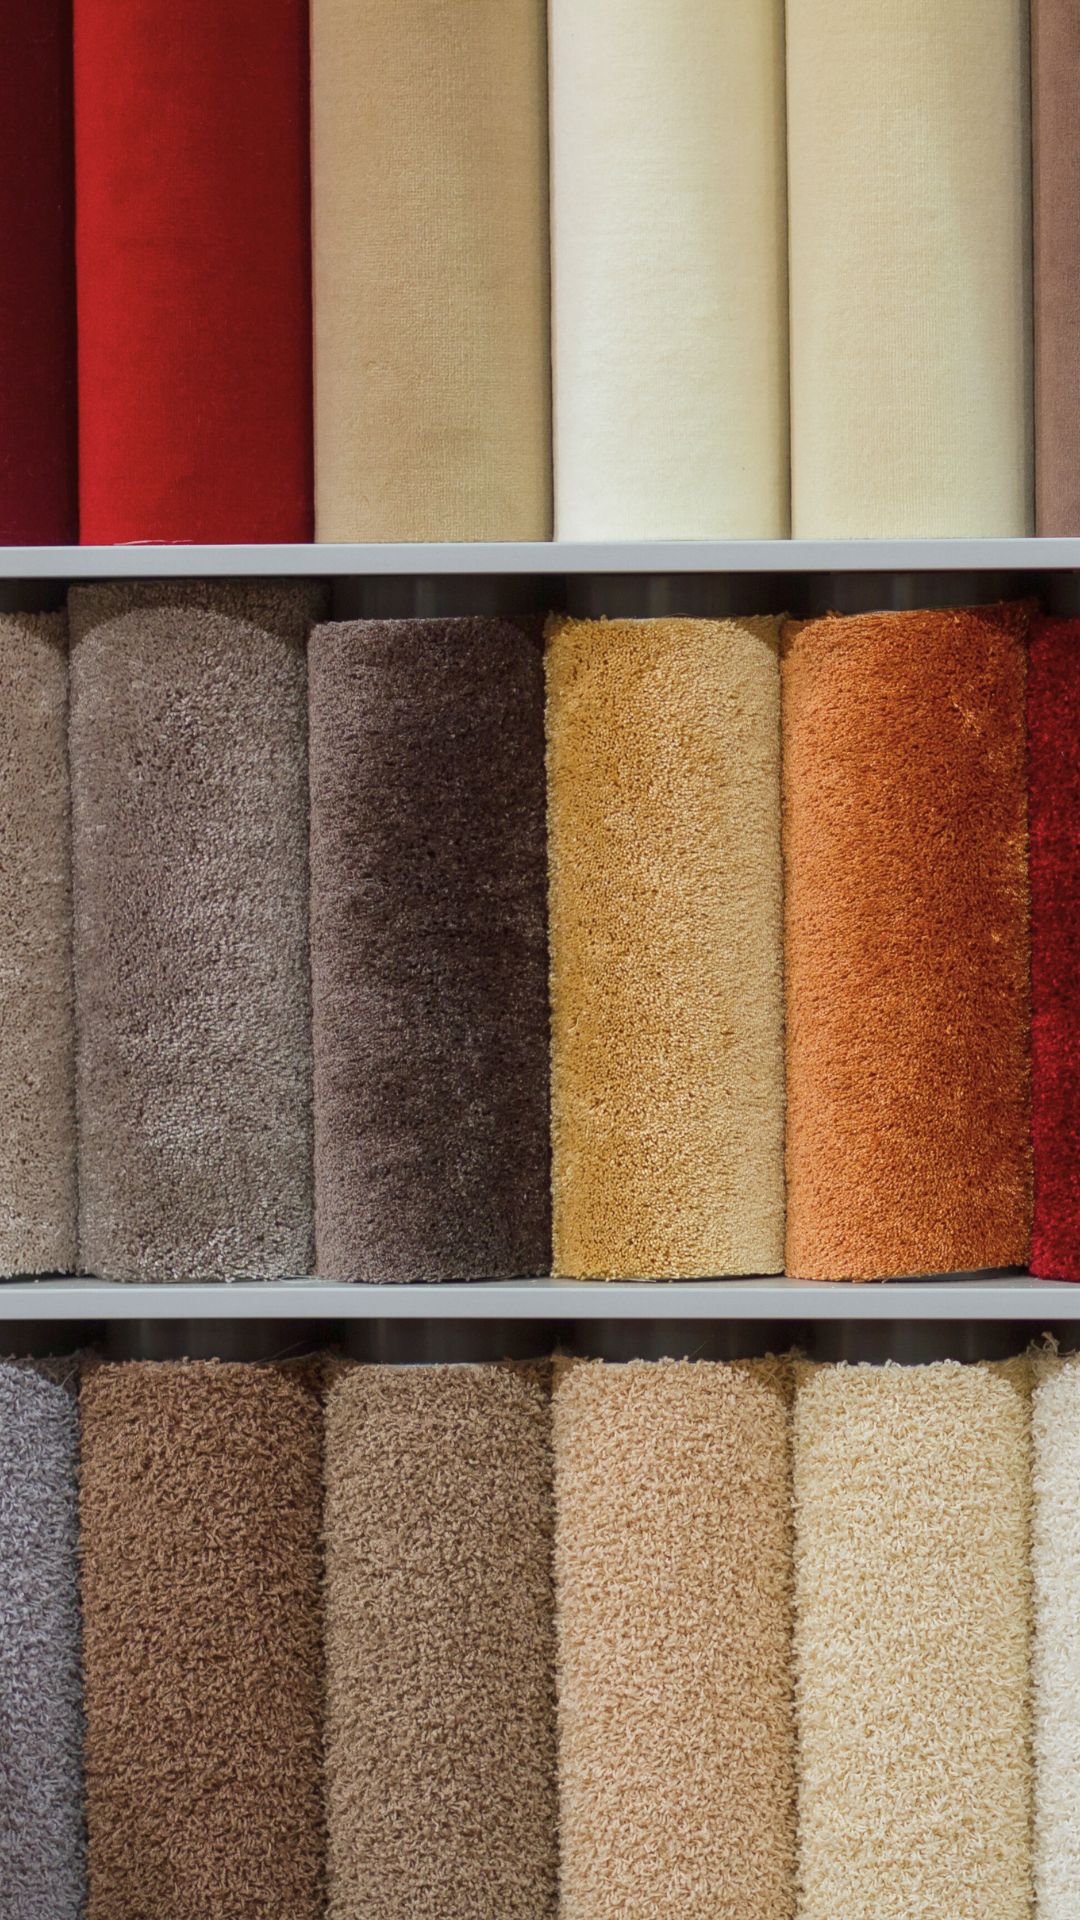 Tessuti e colori dei tappeti versione mobile